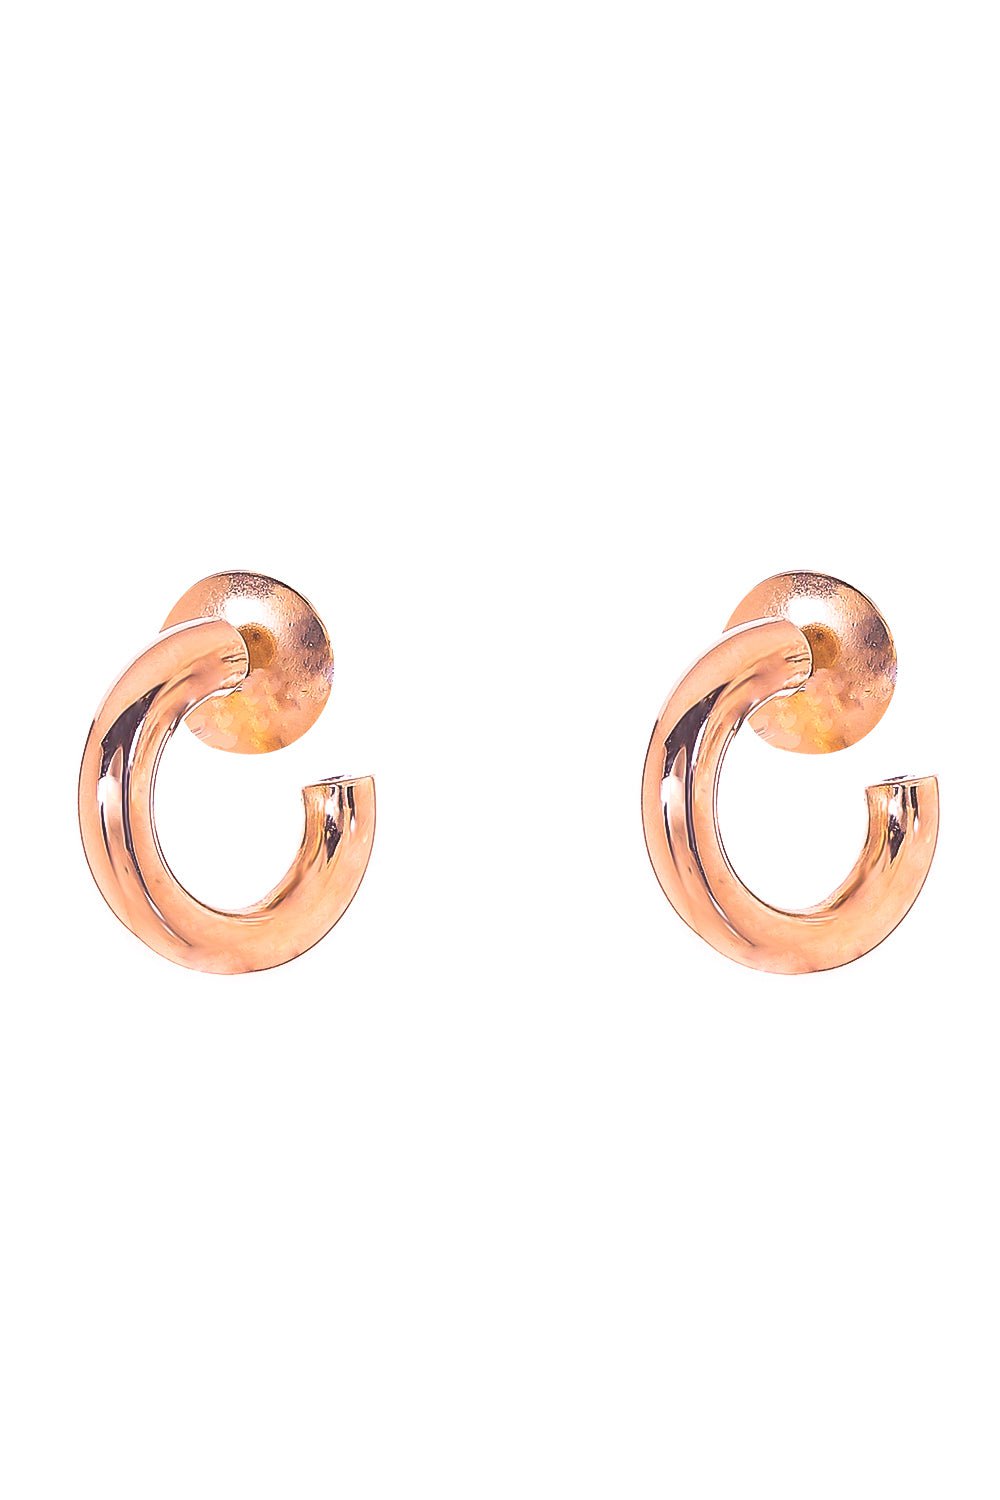 SIDNEY GARBER-Mallory Hoop Earrings - 1.8cm-ROSE GOLD